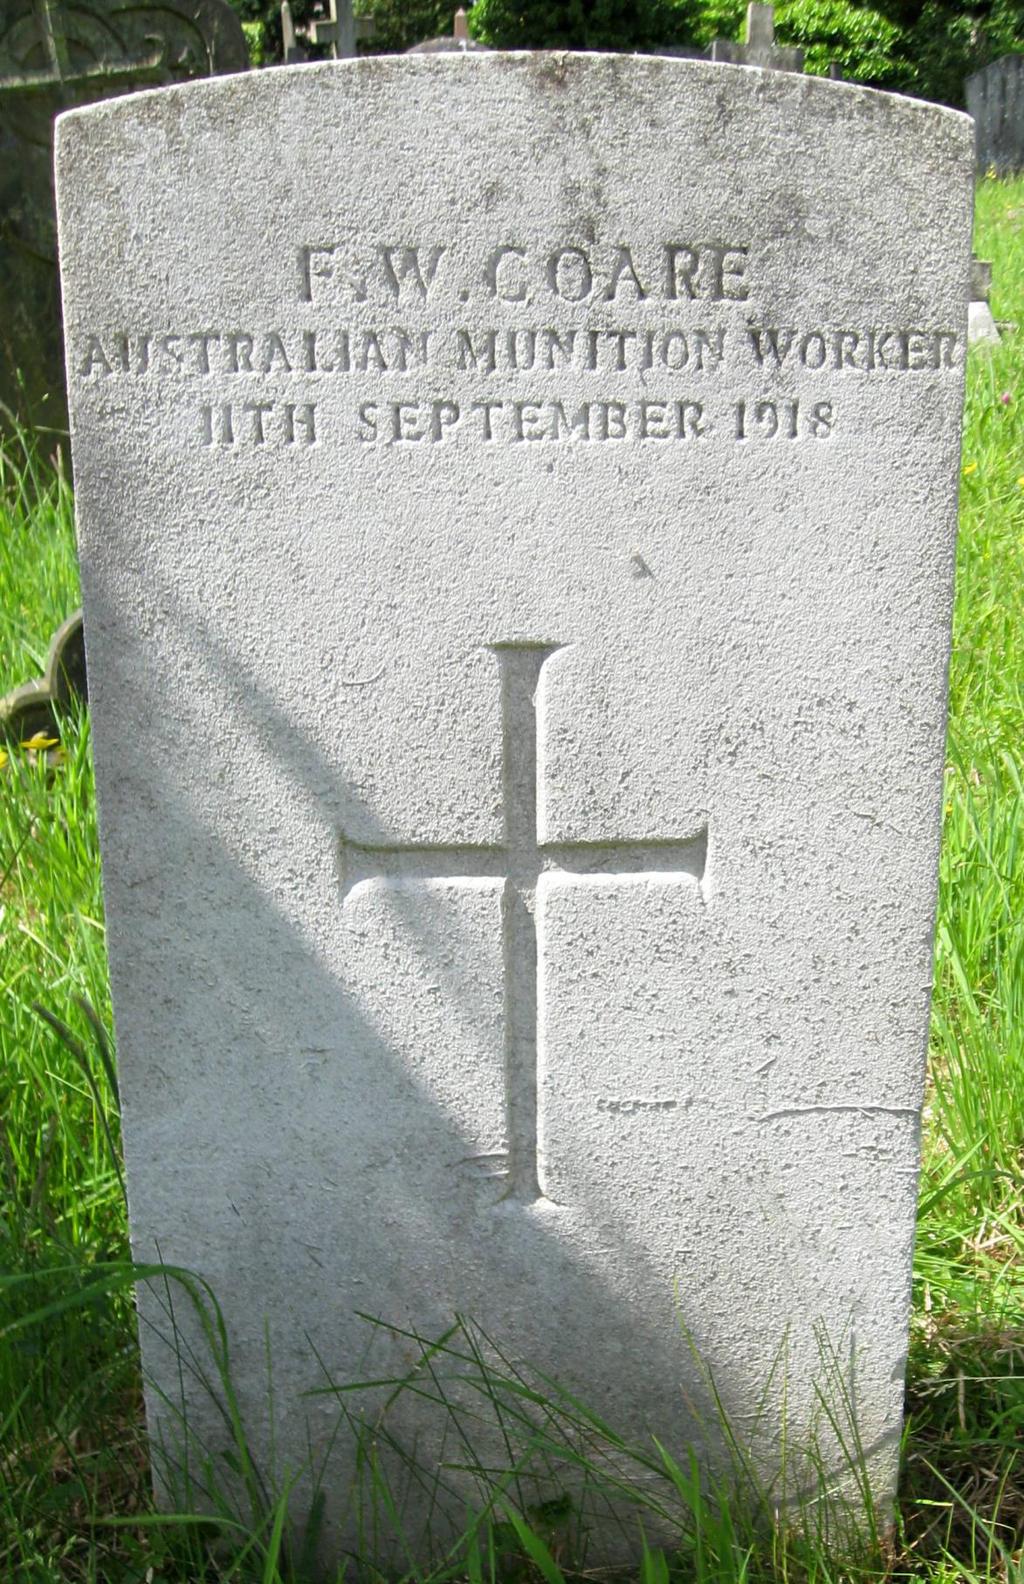 Photo of Australian Munition Wo